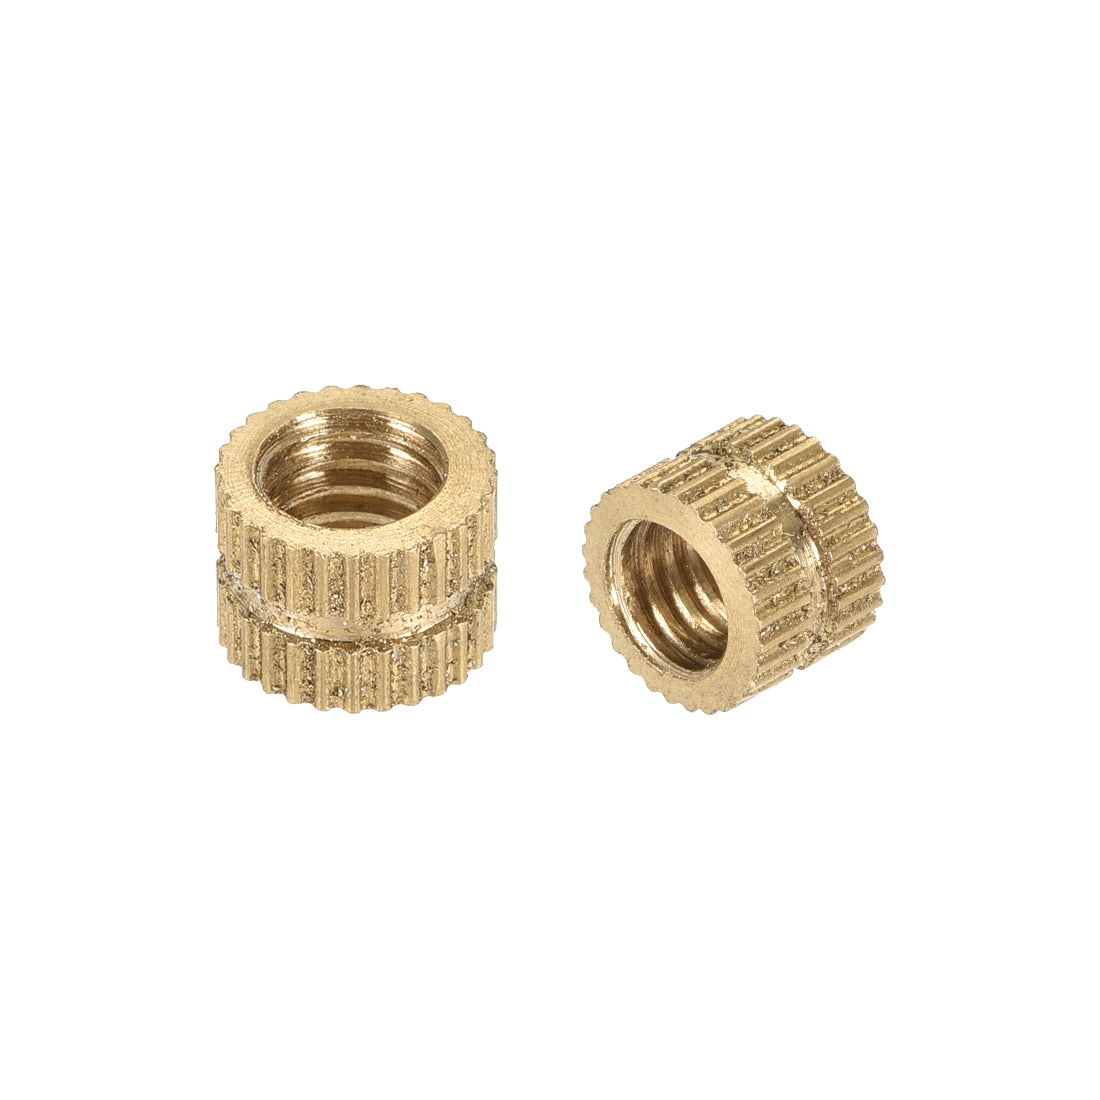 uxcell Uxcell Knurled Insert Nuts, M6 x 6mm(L) x 8mm(OD) Female Thread Brass Embedment Assortment Kit, 20 Pcs